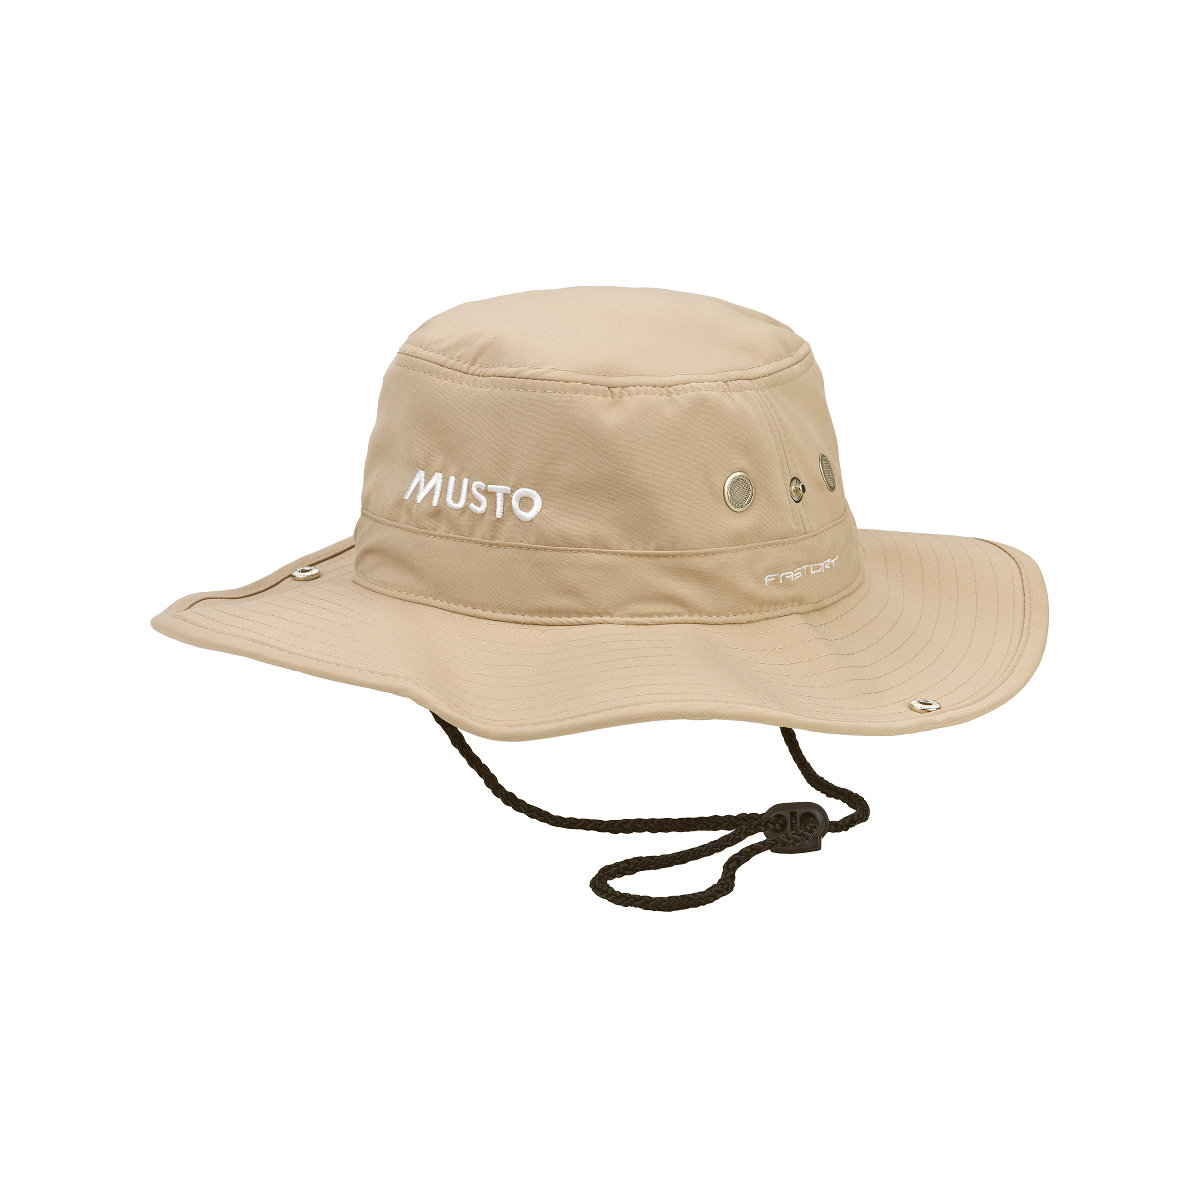 Musto Evolution FD Brimmed chapeau de voile marron, taille M